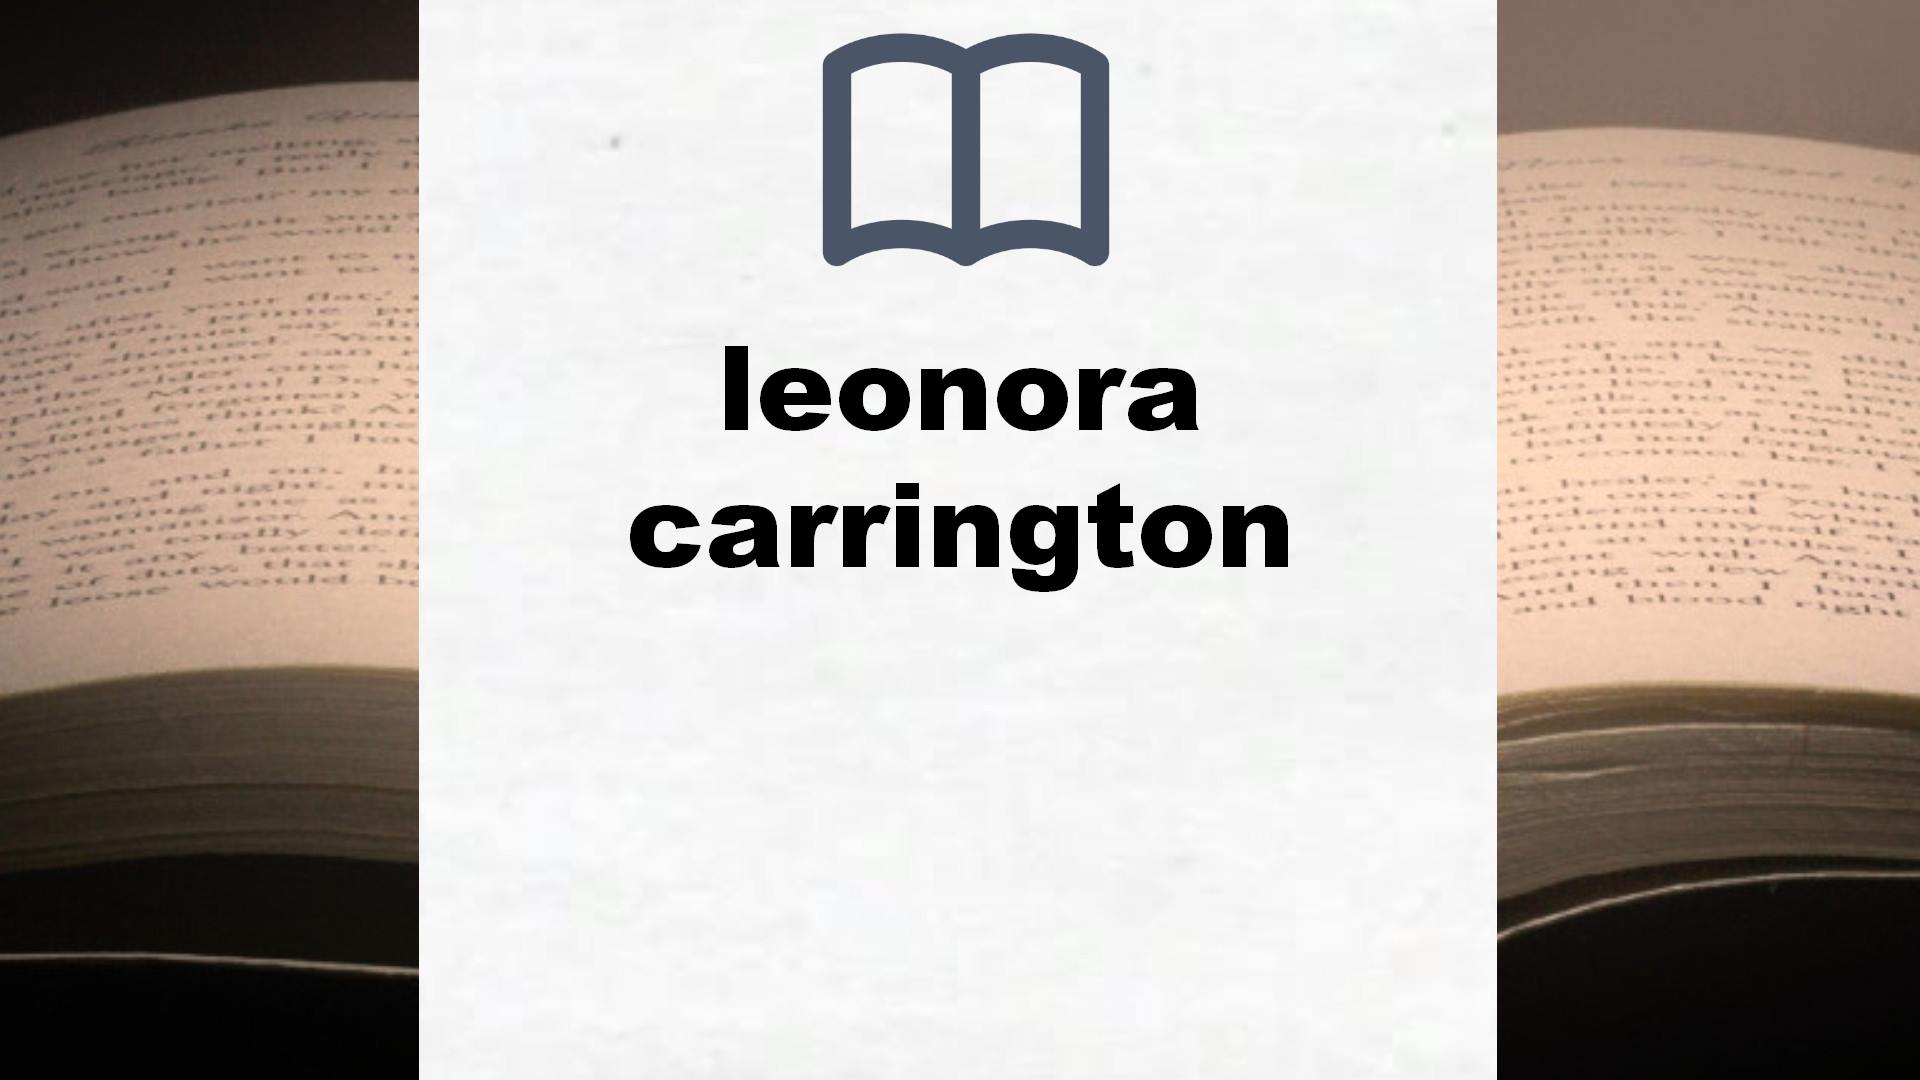 Libros sobre leonora carrington